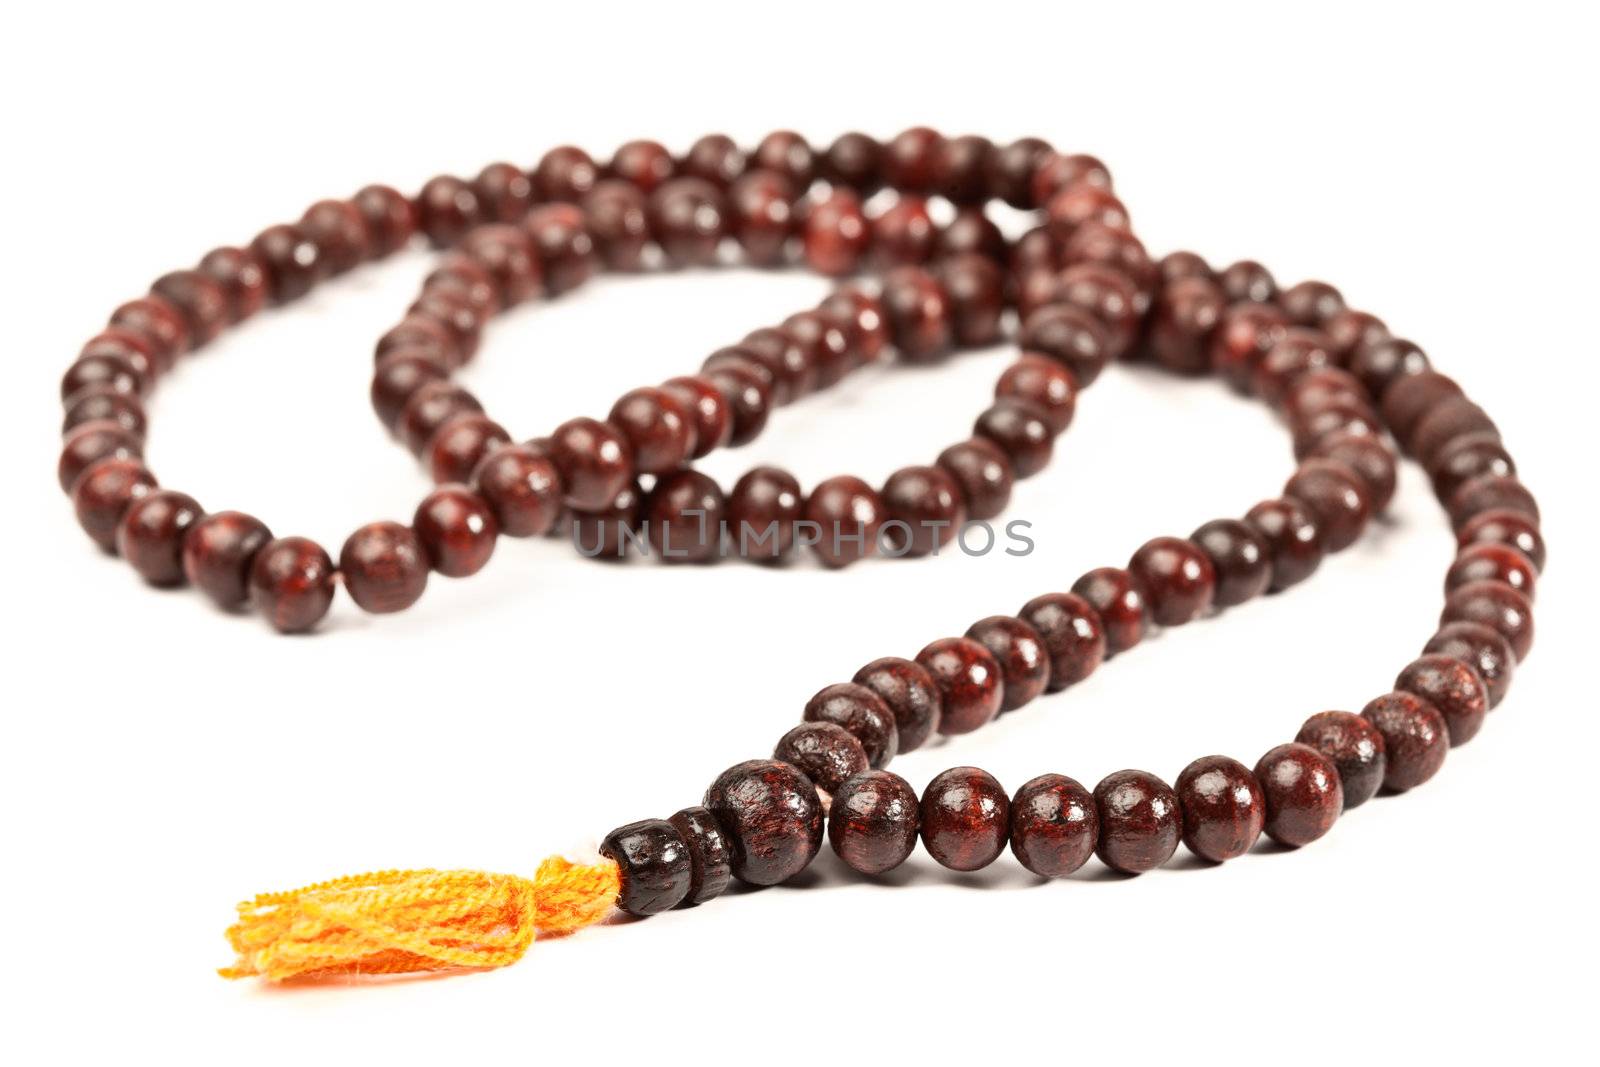 Japa Mala - Buddhist or Hindu prayer beads isolated on white